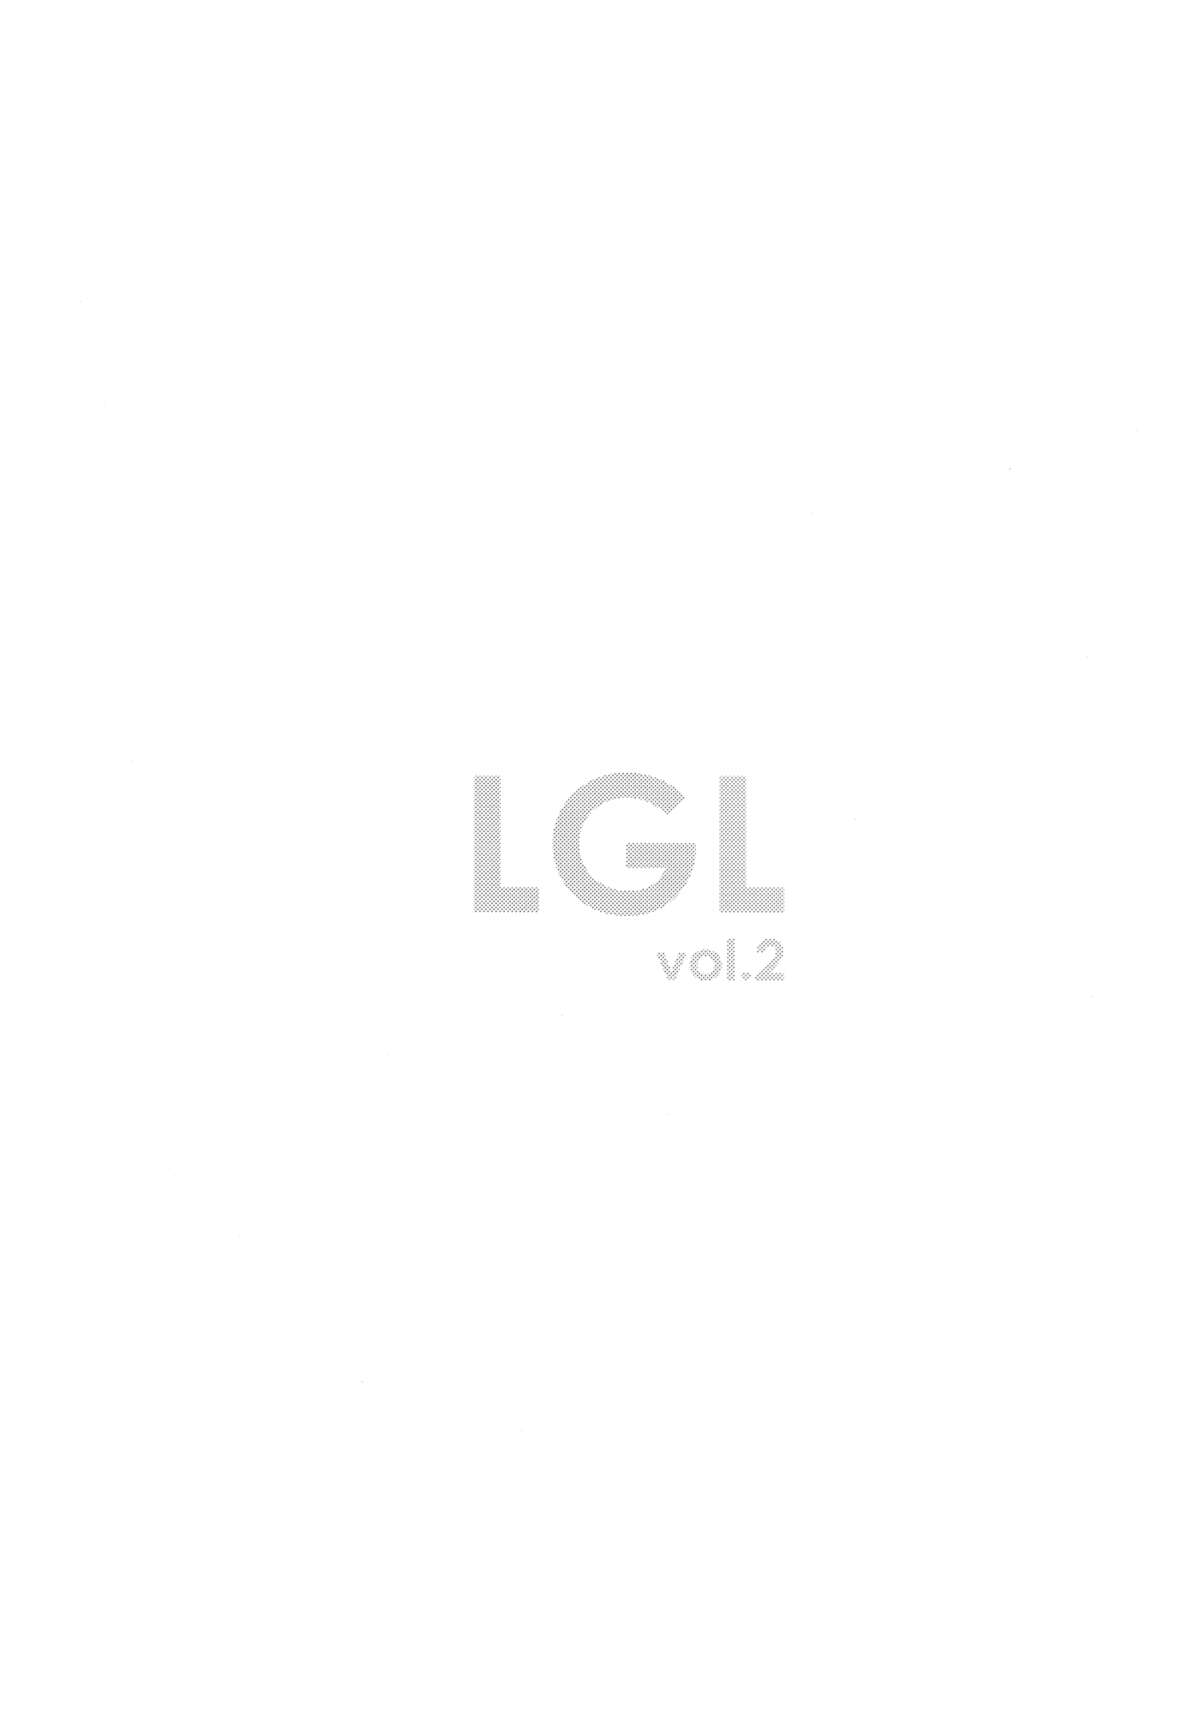 (サンクリ53) [深爪貴族 (あまろたまろ)] Lovely Girls' Lily vol.2 (魔法少女まどか☆マギカ) [英訳]